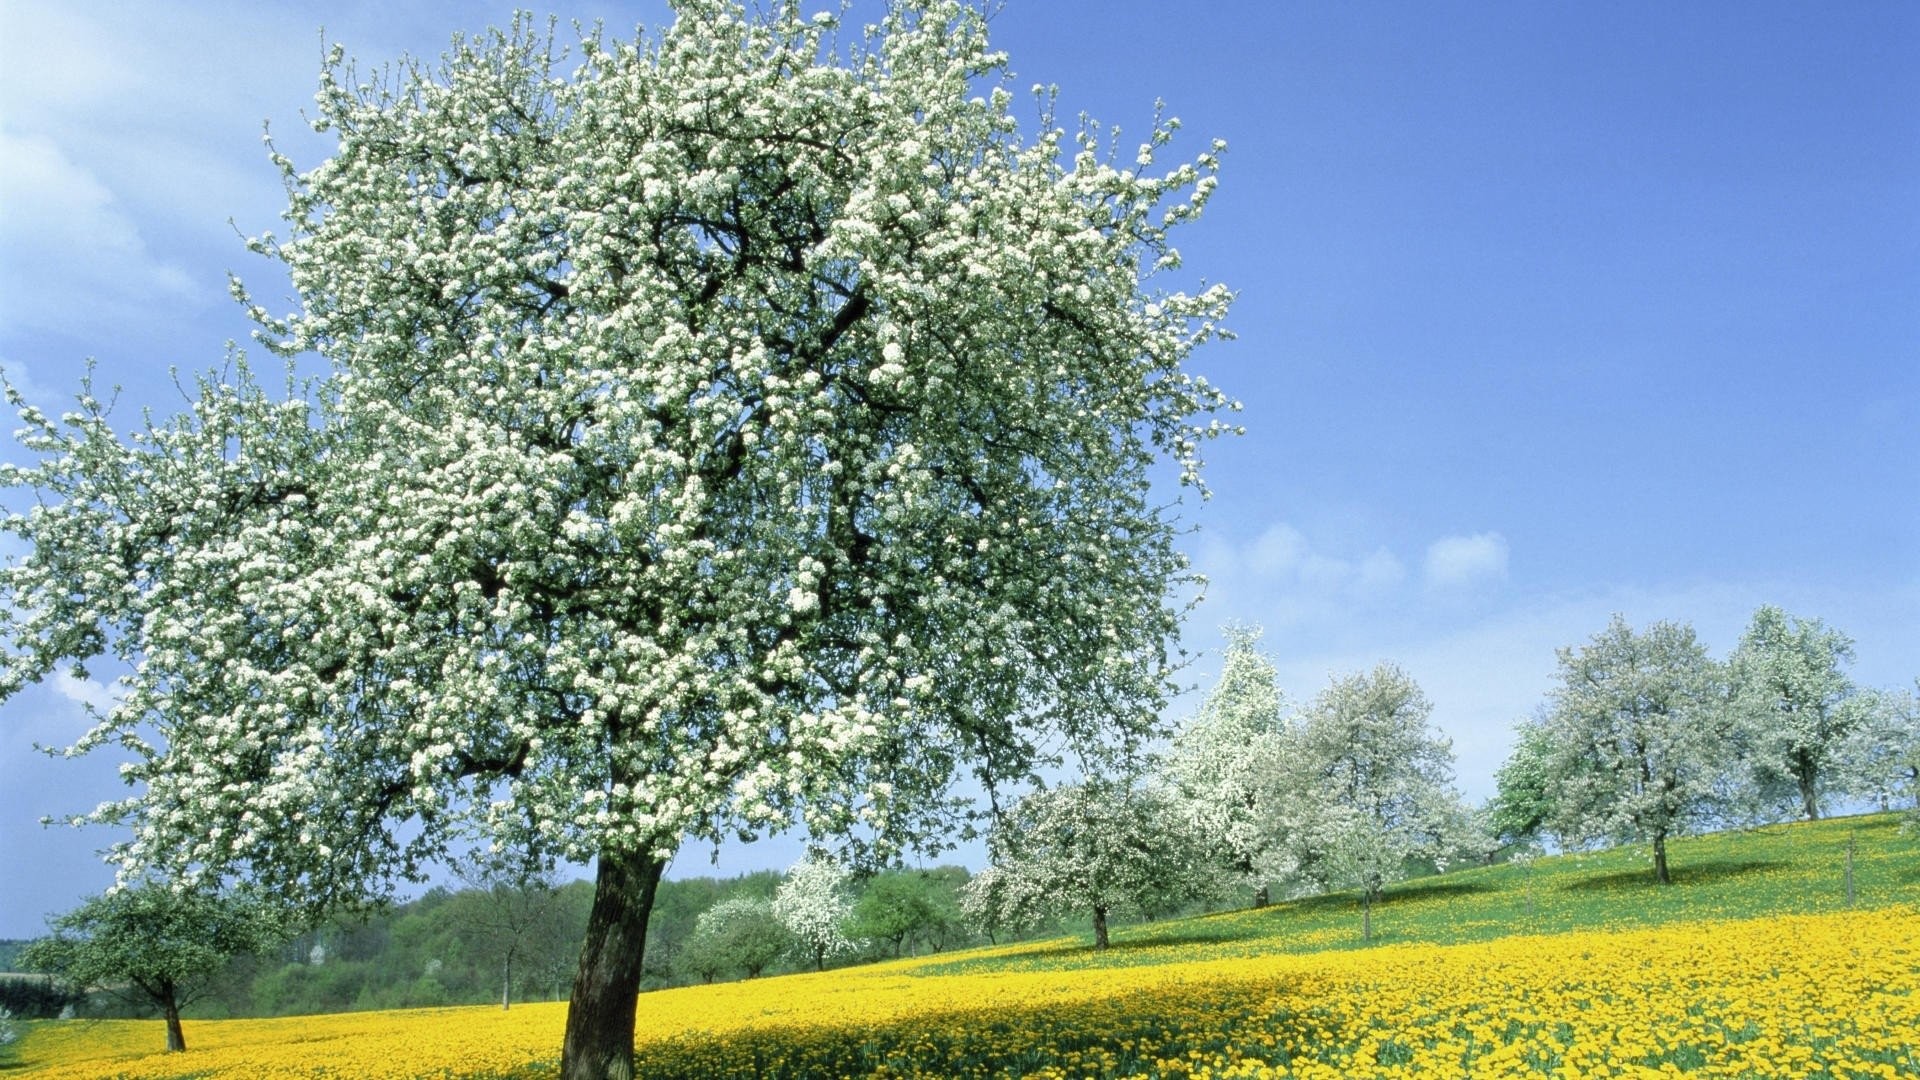 1920x1080 Erde/Natur - Meadow Erde/Natur FrÃ¼hling Baum BlÃ¼te Yellow Flower Feld White  Flower